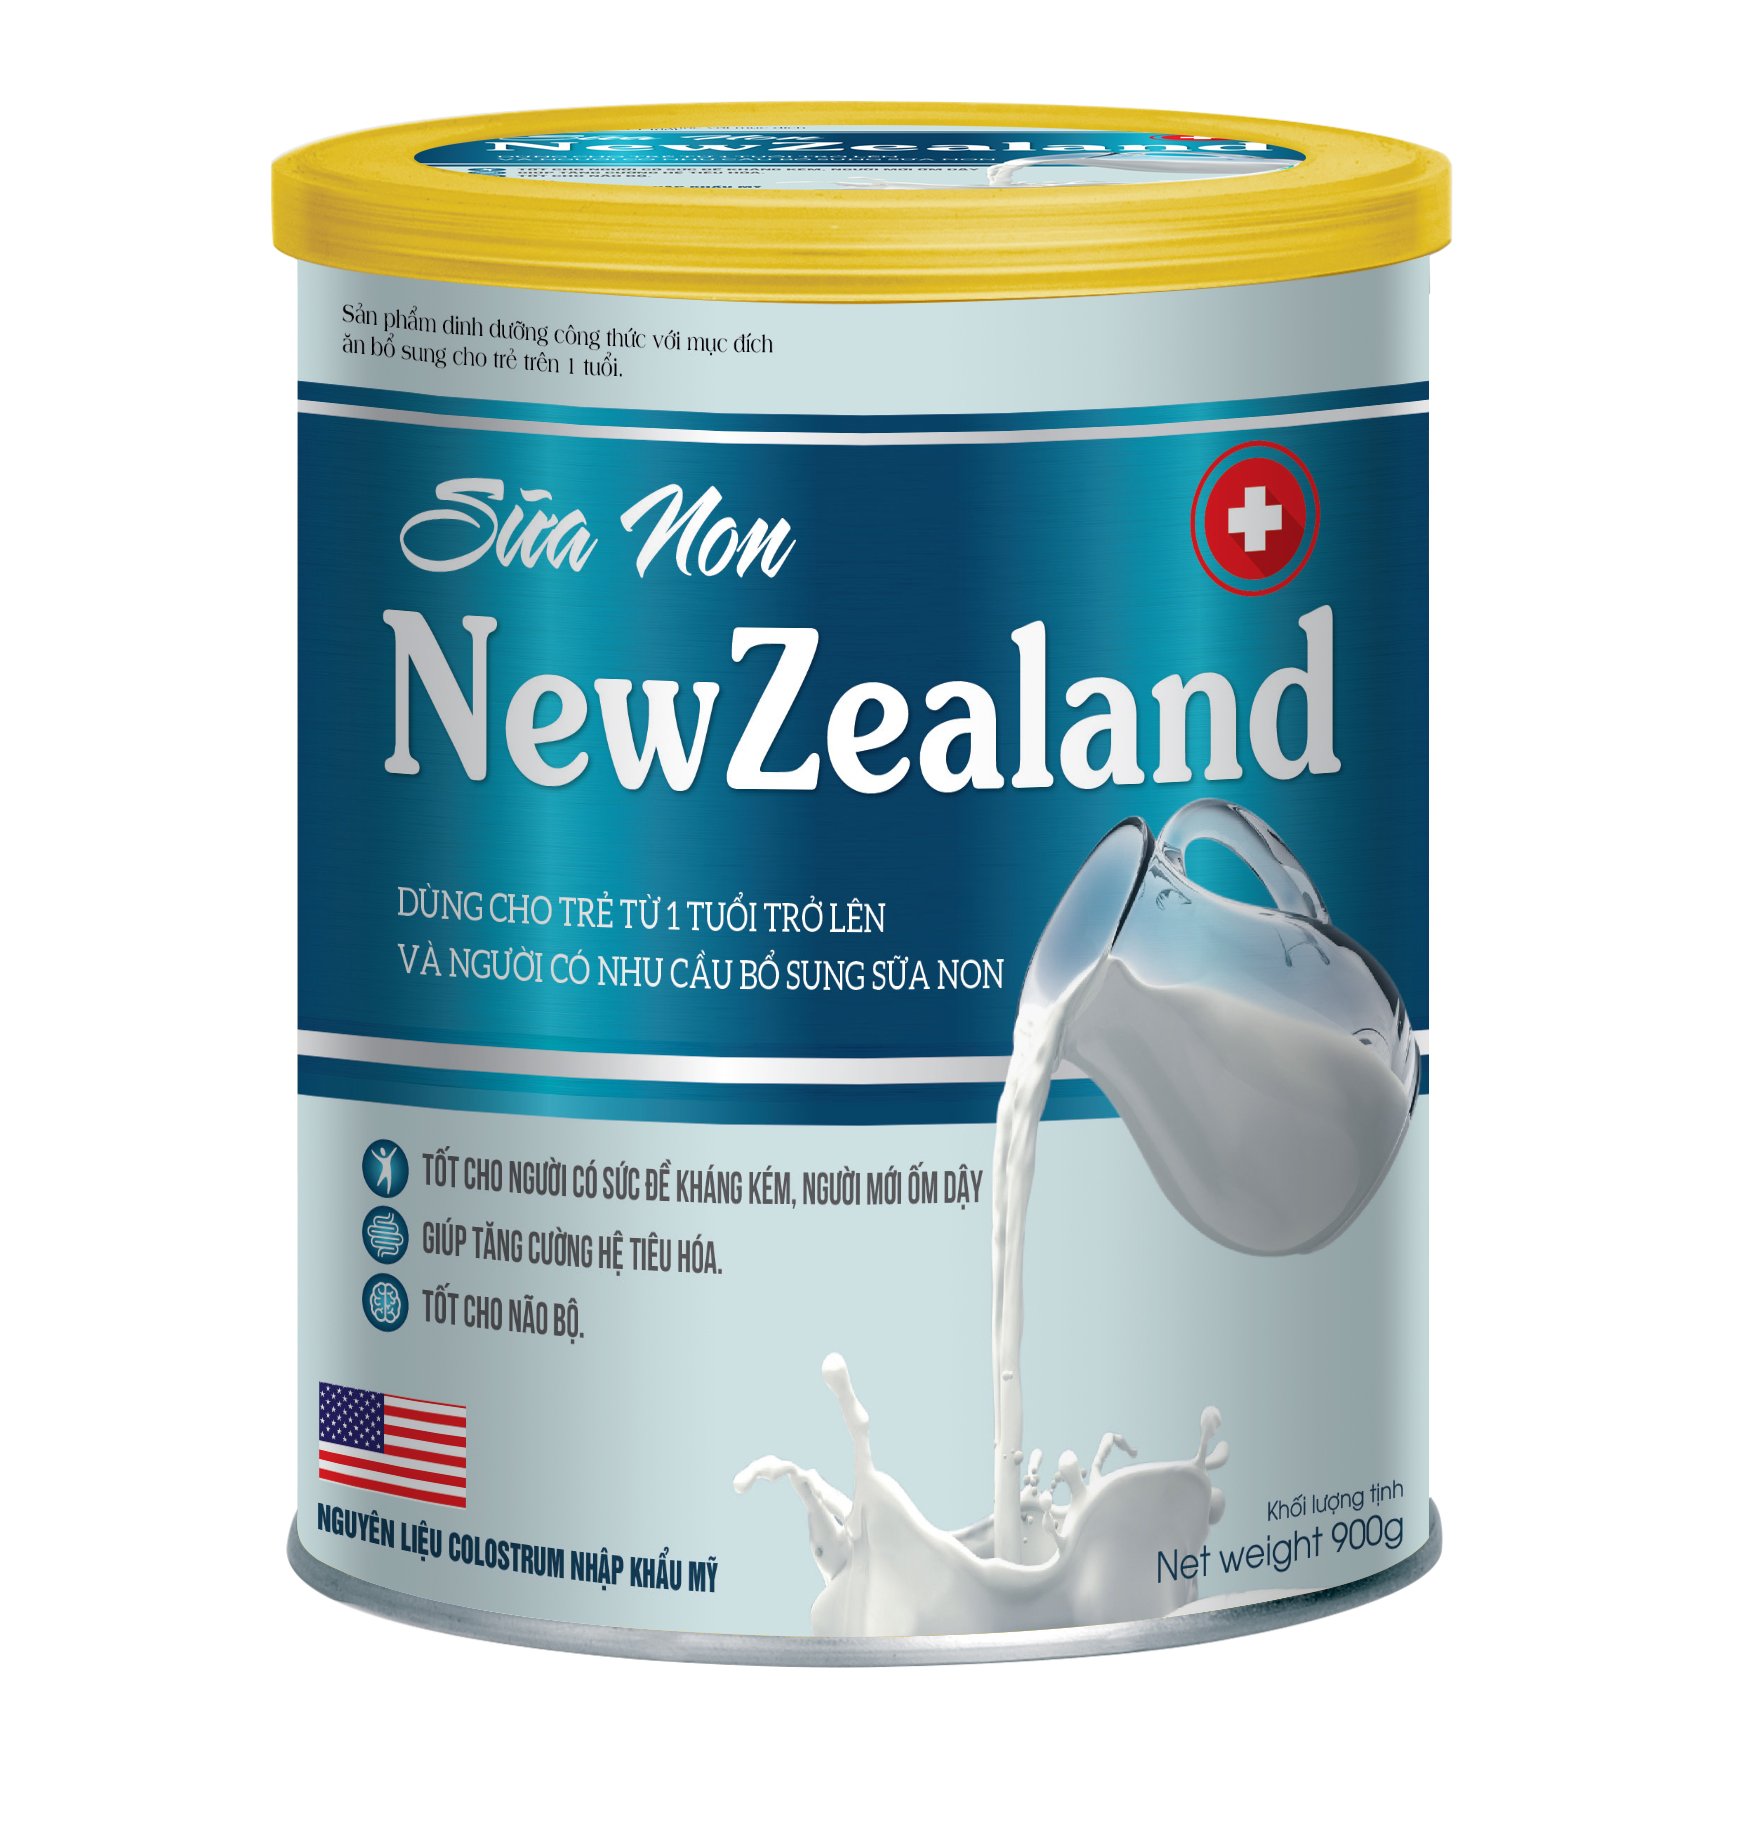 [Hộp 400g] Sữa Non New Zealand Giúp Bổ Sung Sữa Non, Vitamin Và Khoáng Chất,Giúp Tăng Đề Kháng, Phát Triển Chiều Cao, Cân Nặng ,Trí Não Ở Trẻ Nhỏ, Phòng Ngừa Loãng Xương Ở Người Già, - Sữa Non 1